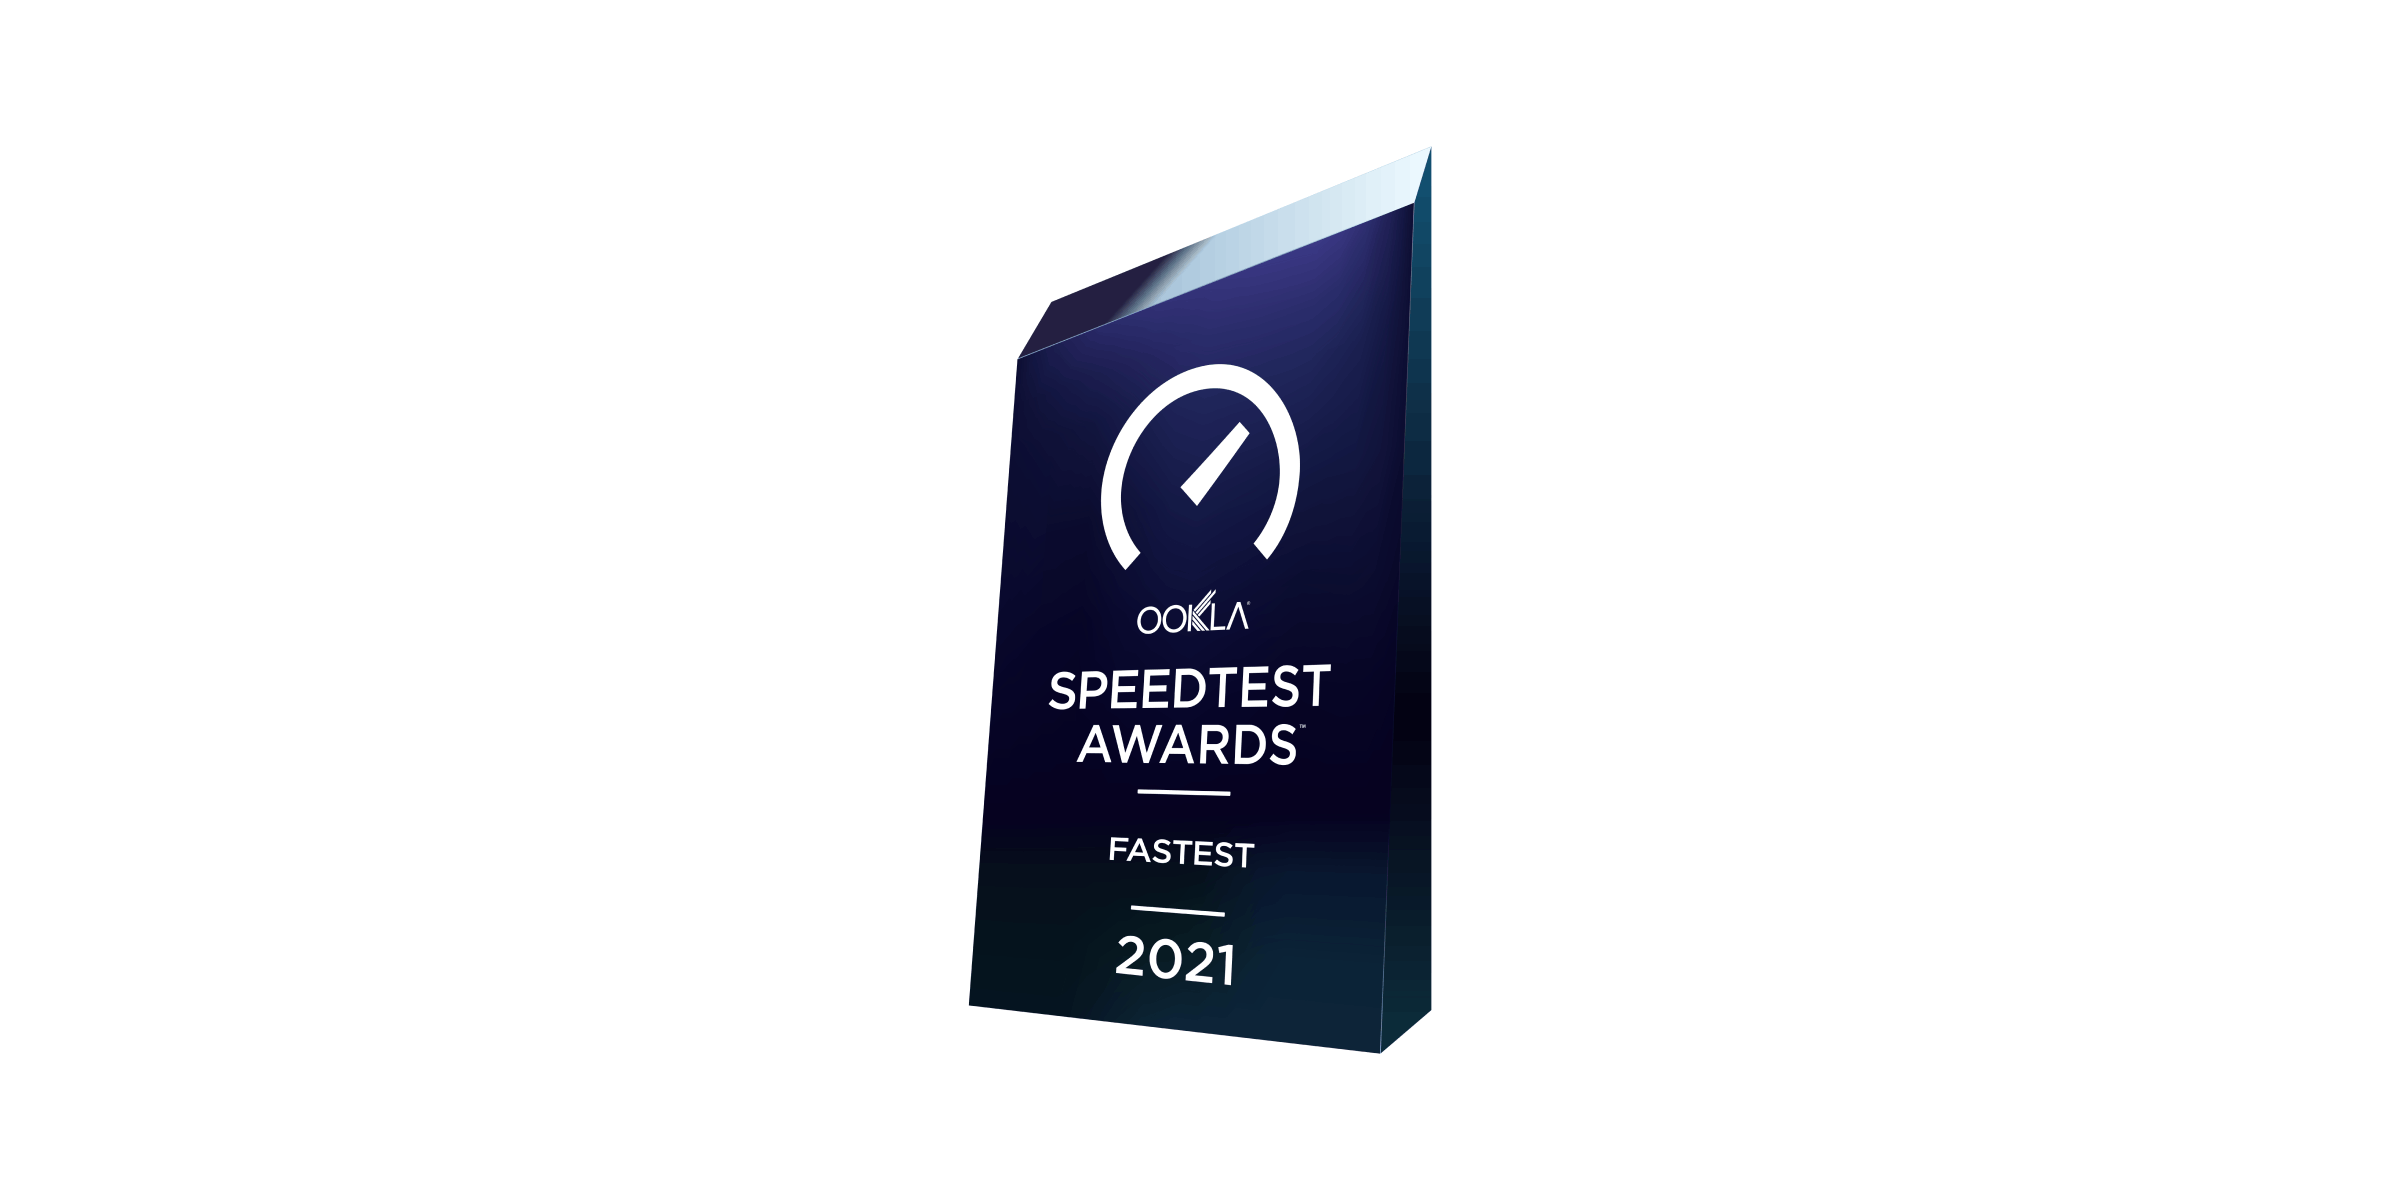 Speedtest awards fastest 2021